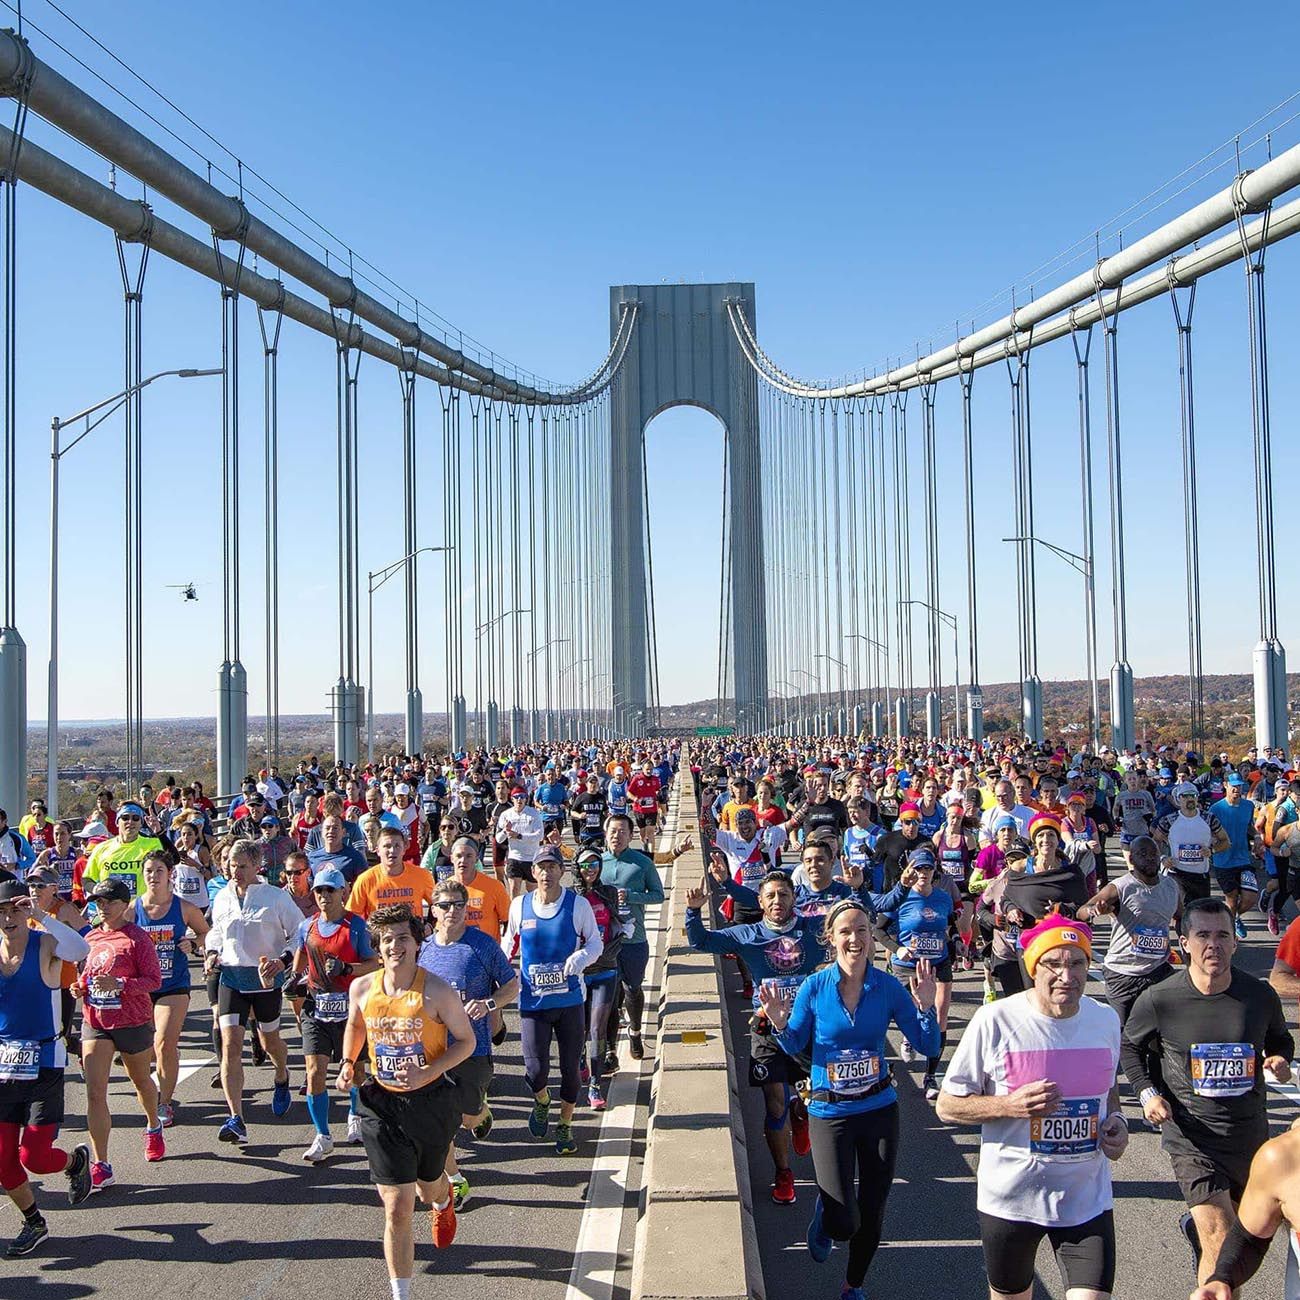 Maratonianos en la maratón de nueva york